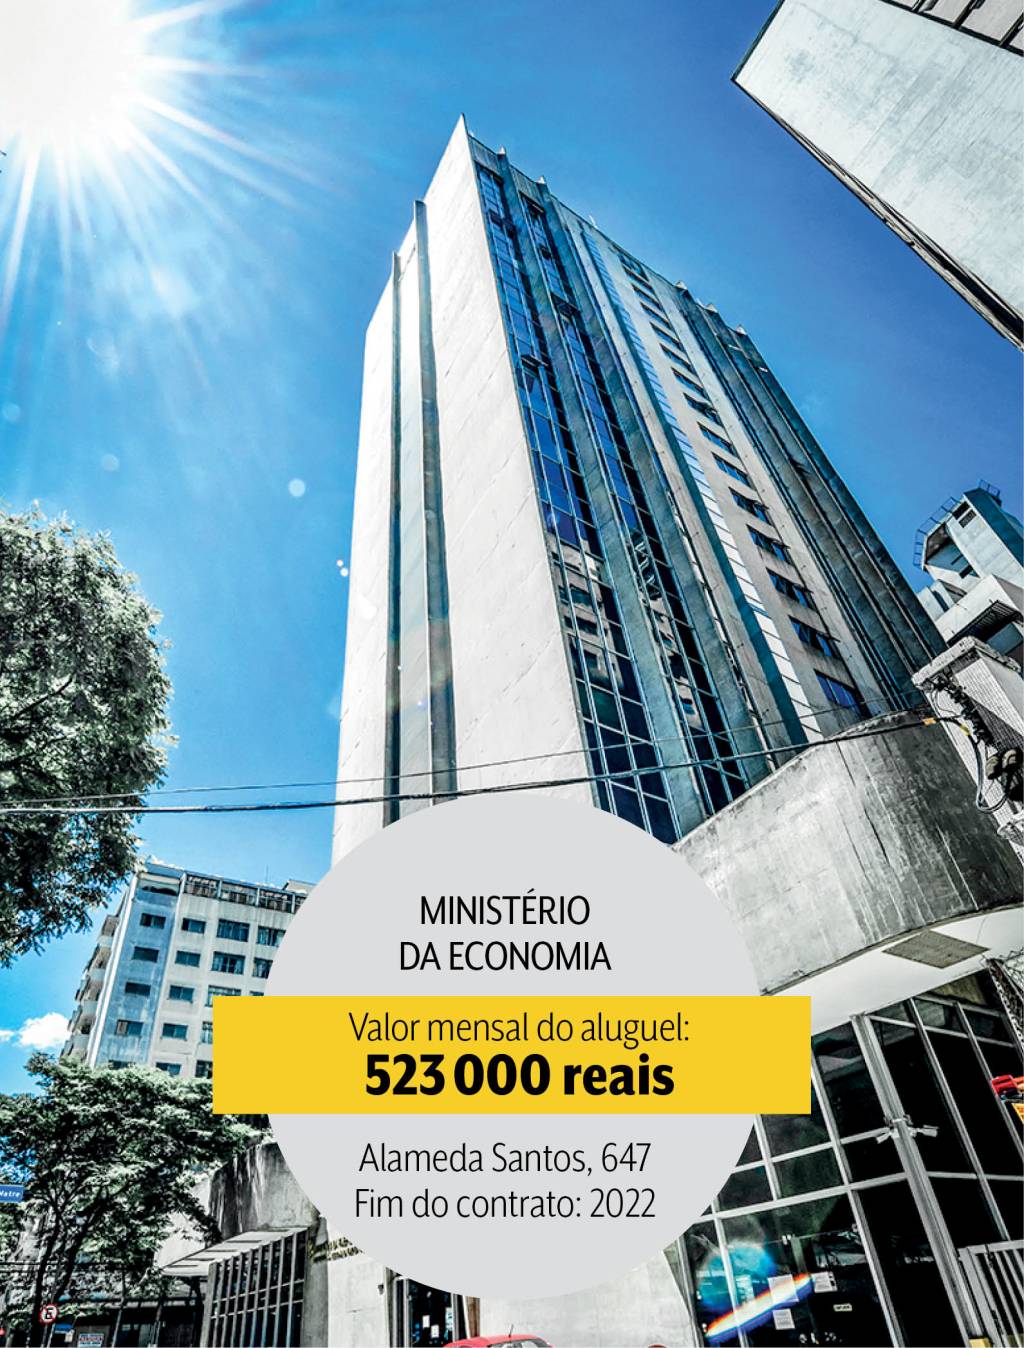 Ministério da Economia: 11,6 milhões de reais por ano em dois prédios, um na Alameda Santos e o outro na Avenida Brigadeiro Luís Antônio